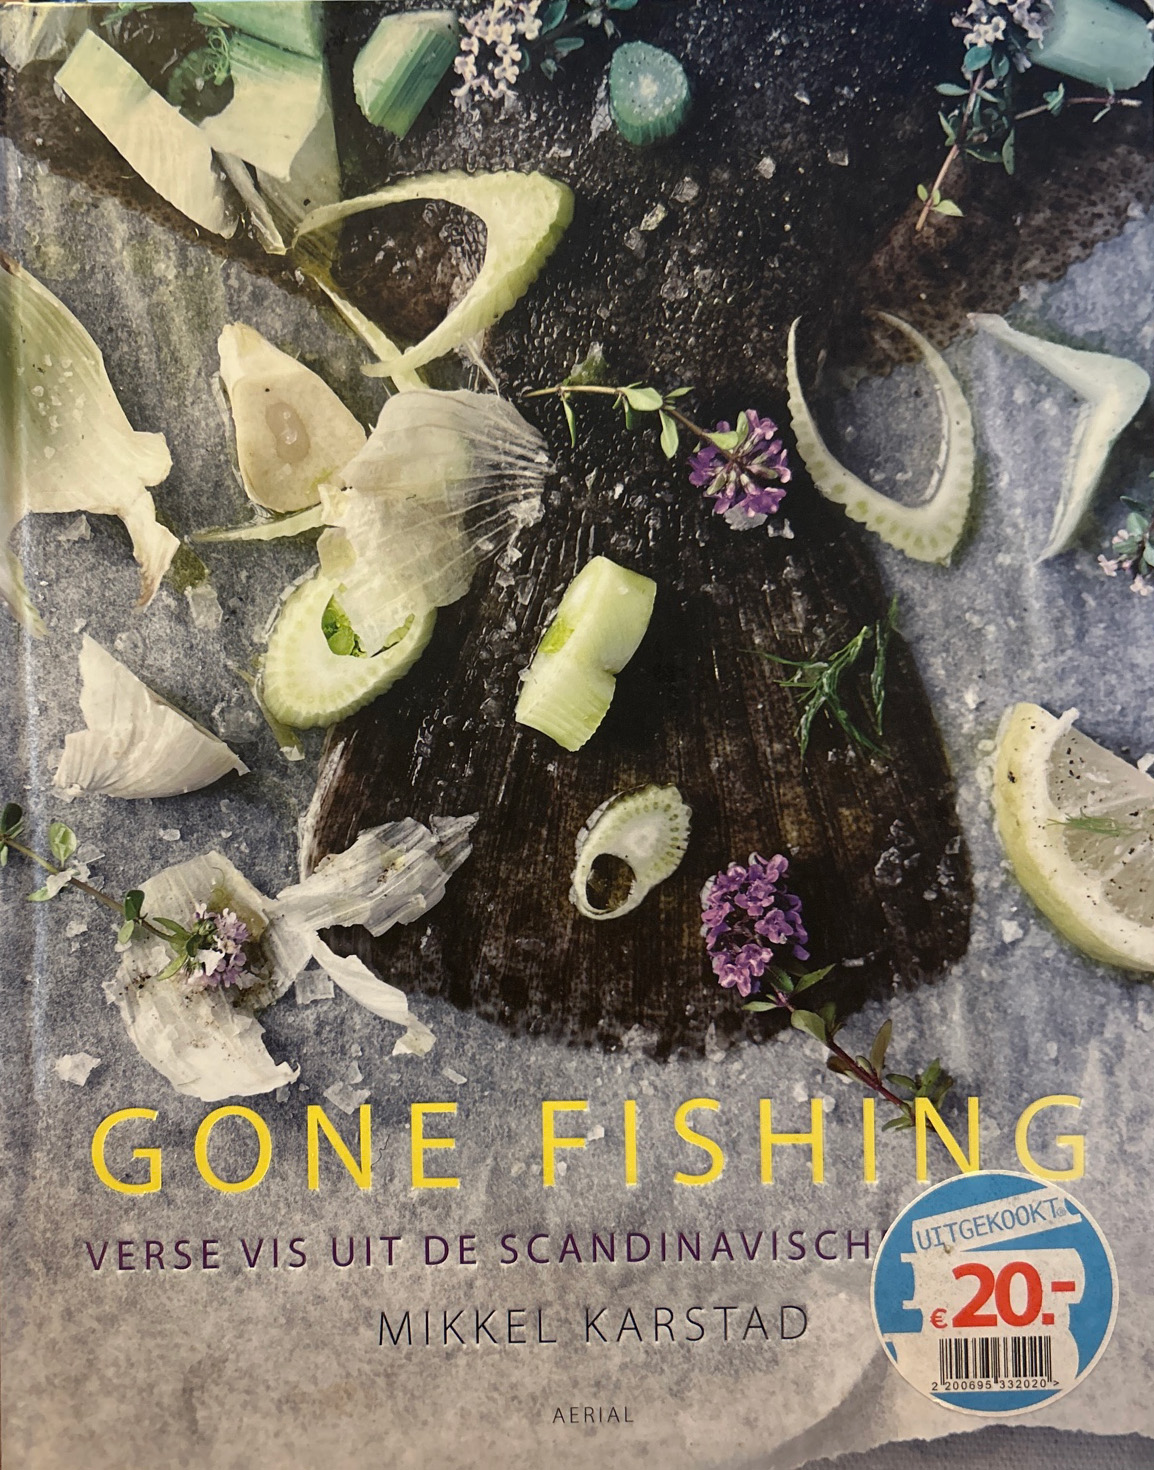 Gone fishing – Mikkel Karstad